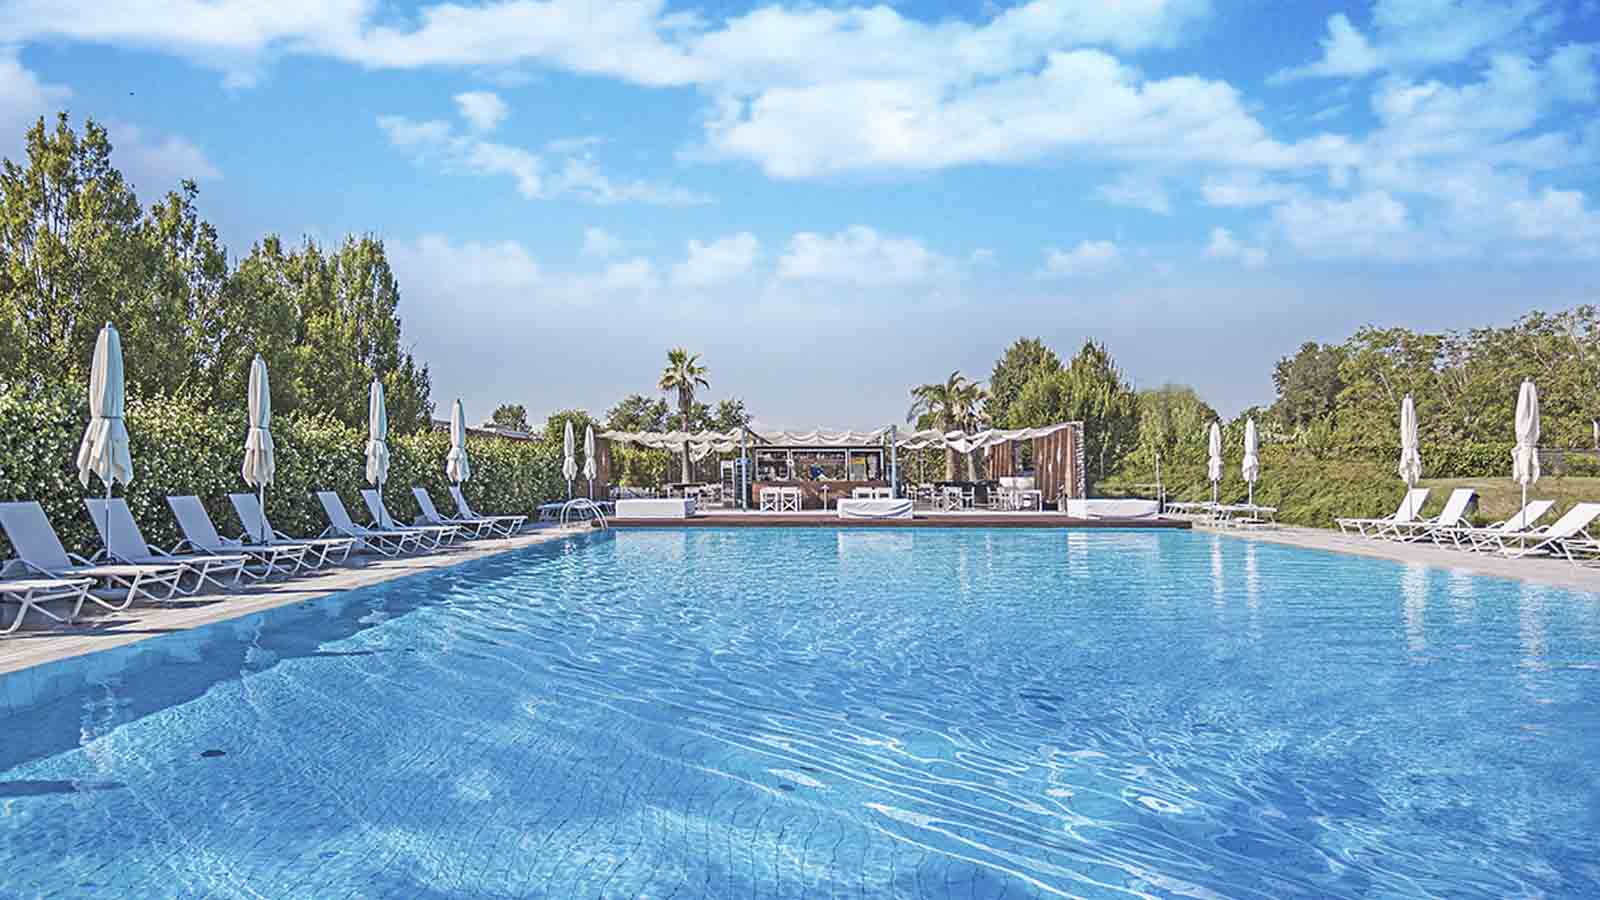 Immagine della piscina del Casalunga golf resort, il design si nota anche negli ambienti esterni cur